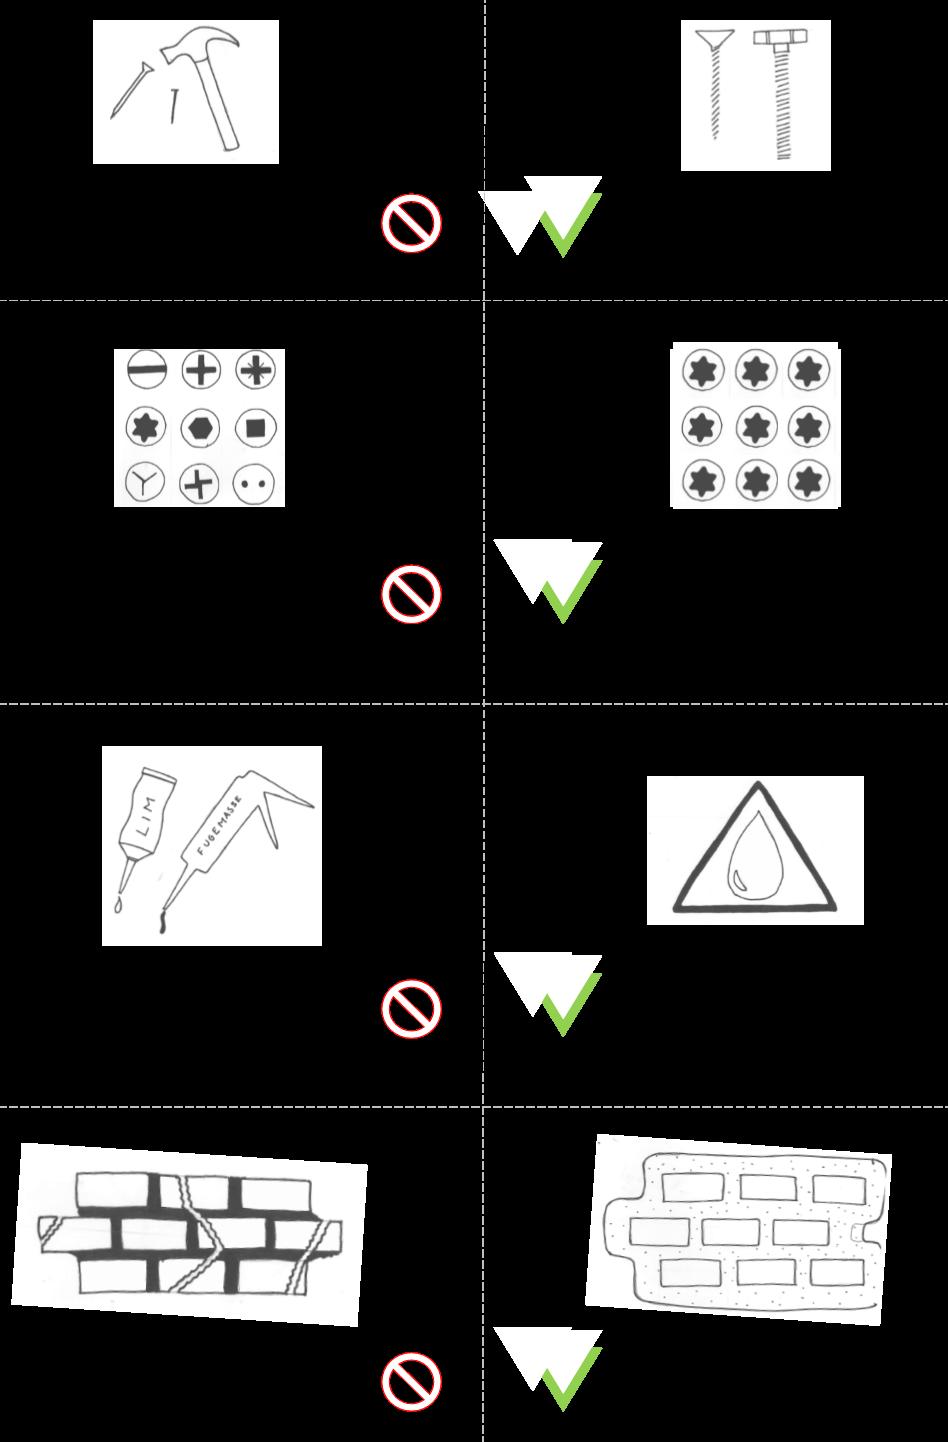 Nedenfor vises en illustrasjon av ulike forbindelsesmetoder som bør benyttes når bygg skal designes for gjenbruk.